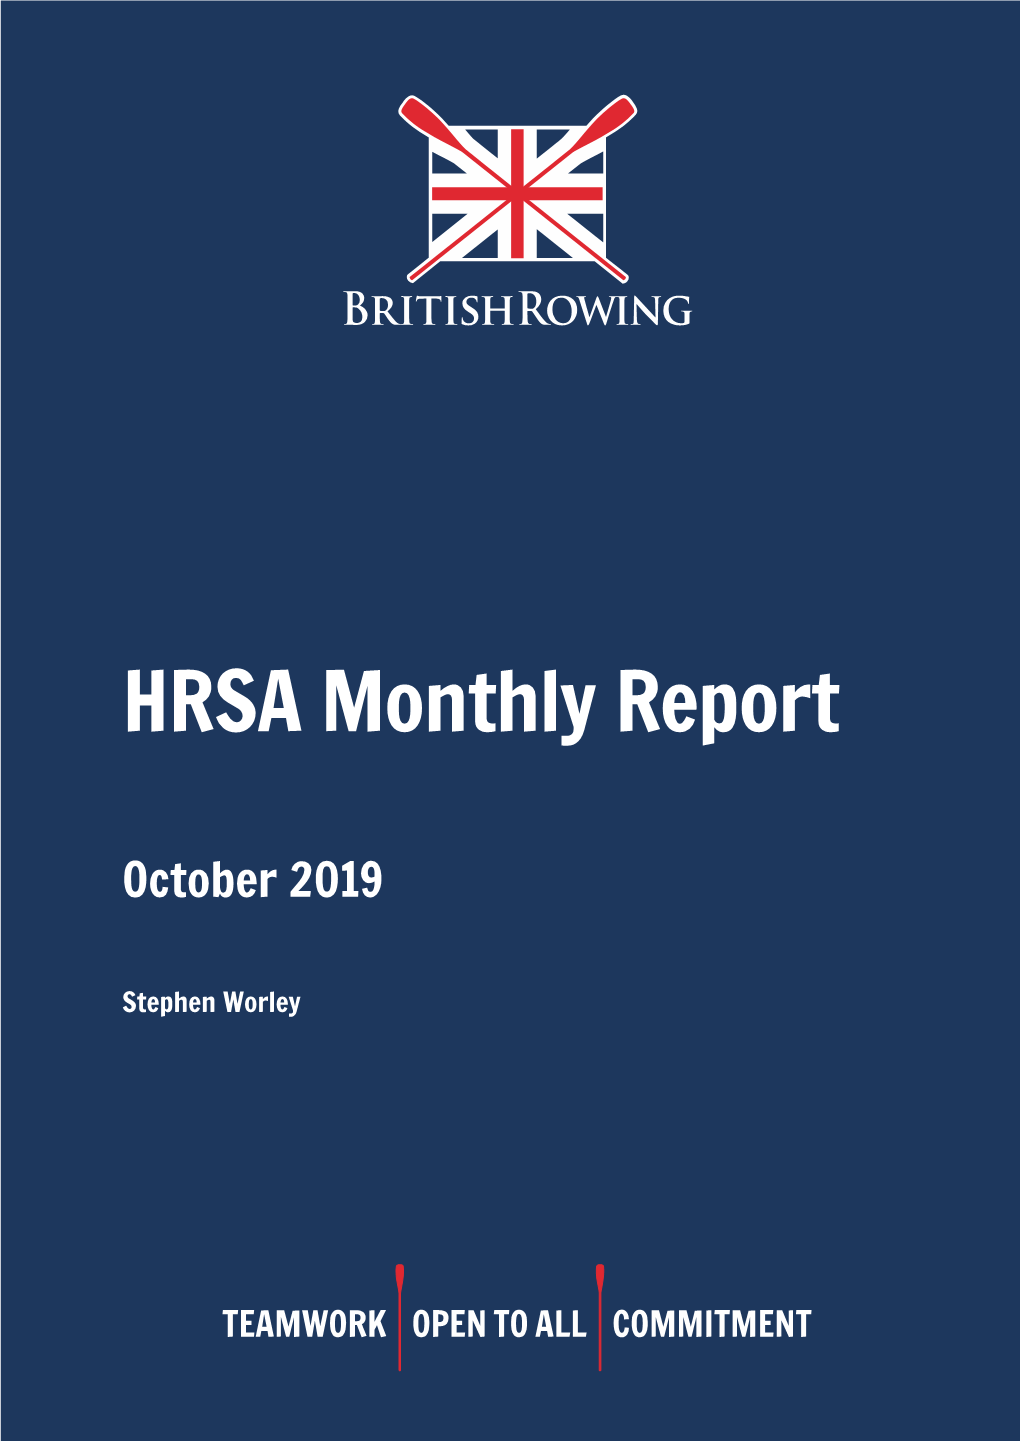 HRSA October 2019